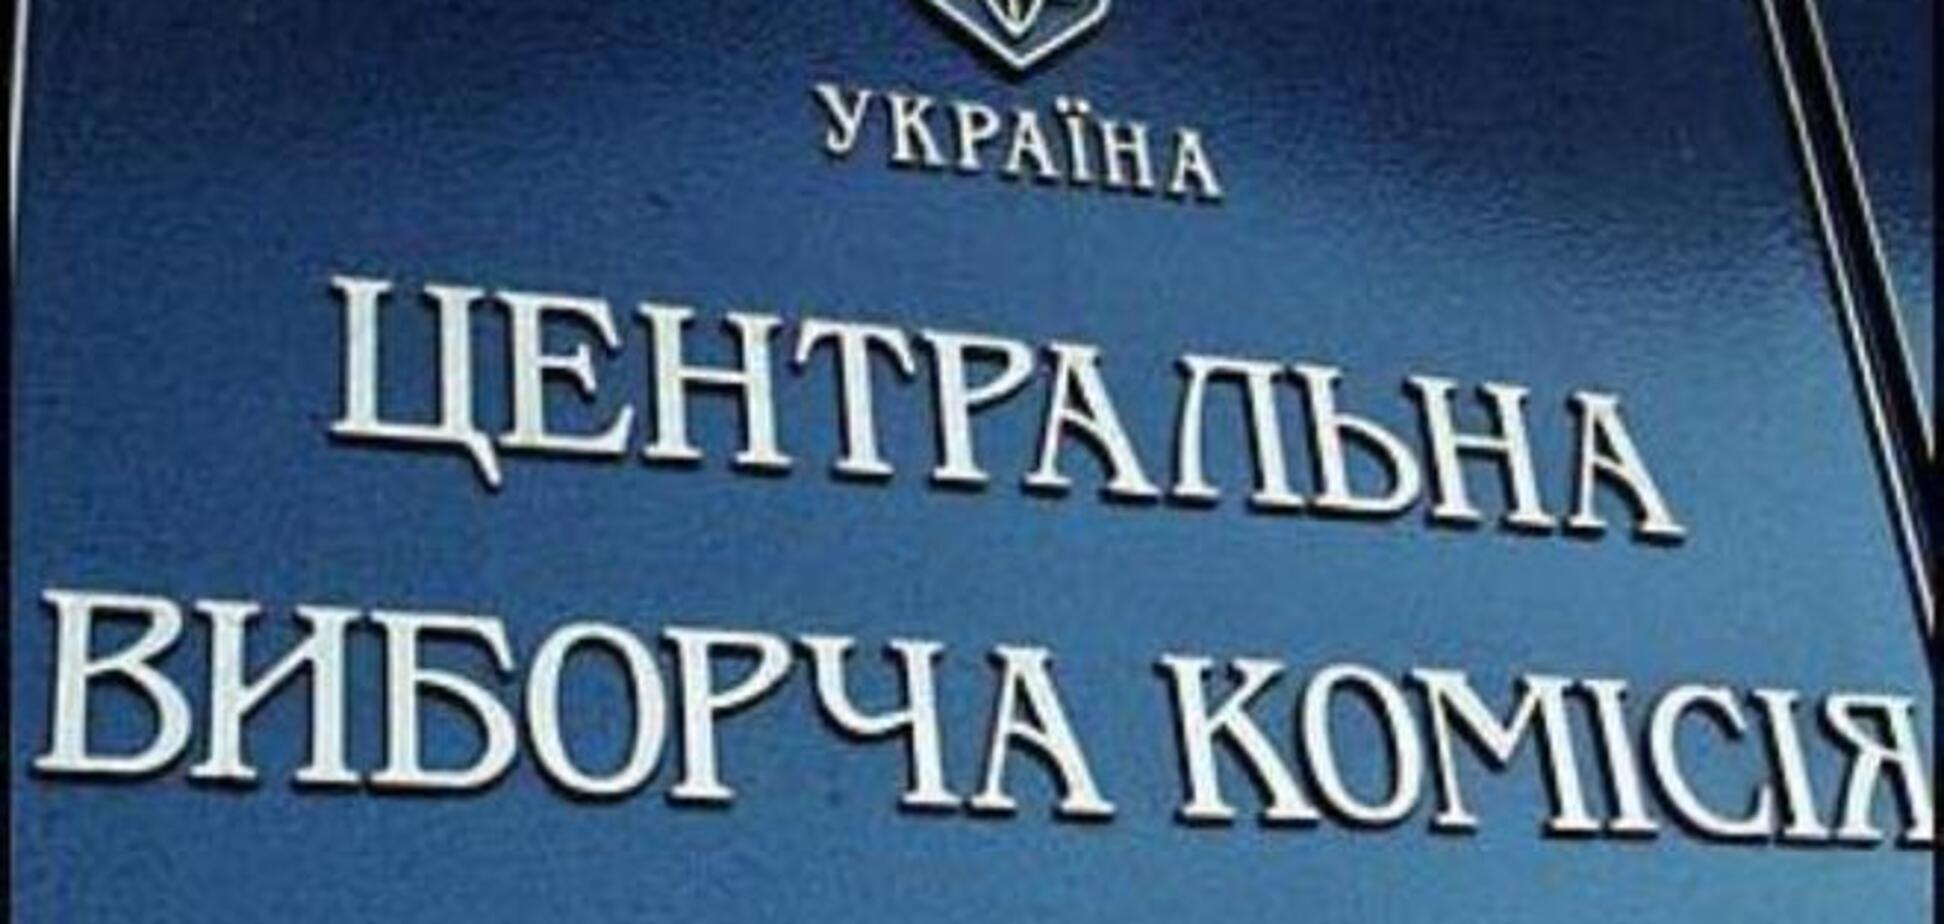 ЦВК зареєстрував Яценюка, Савченко і ще 89 нардепів